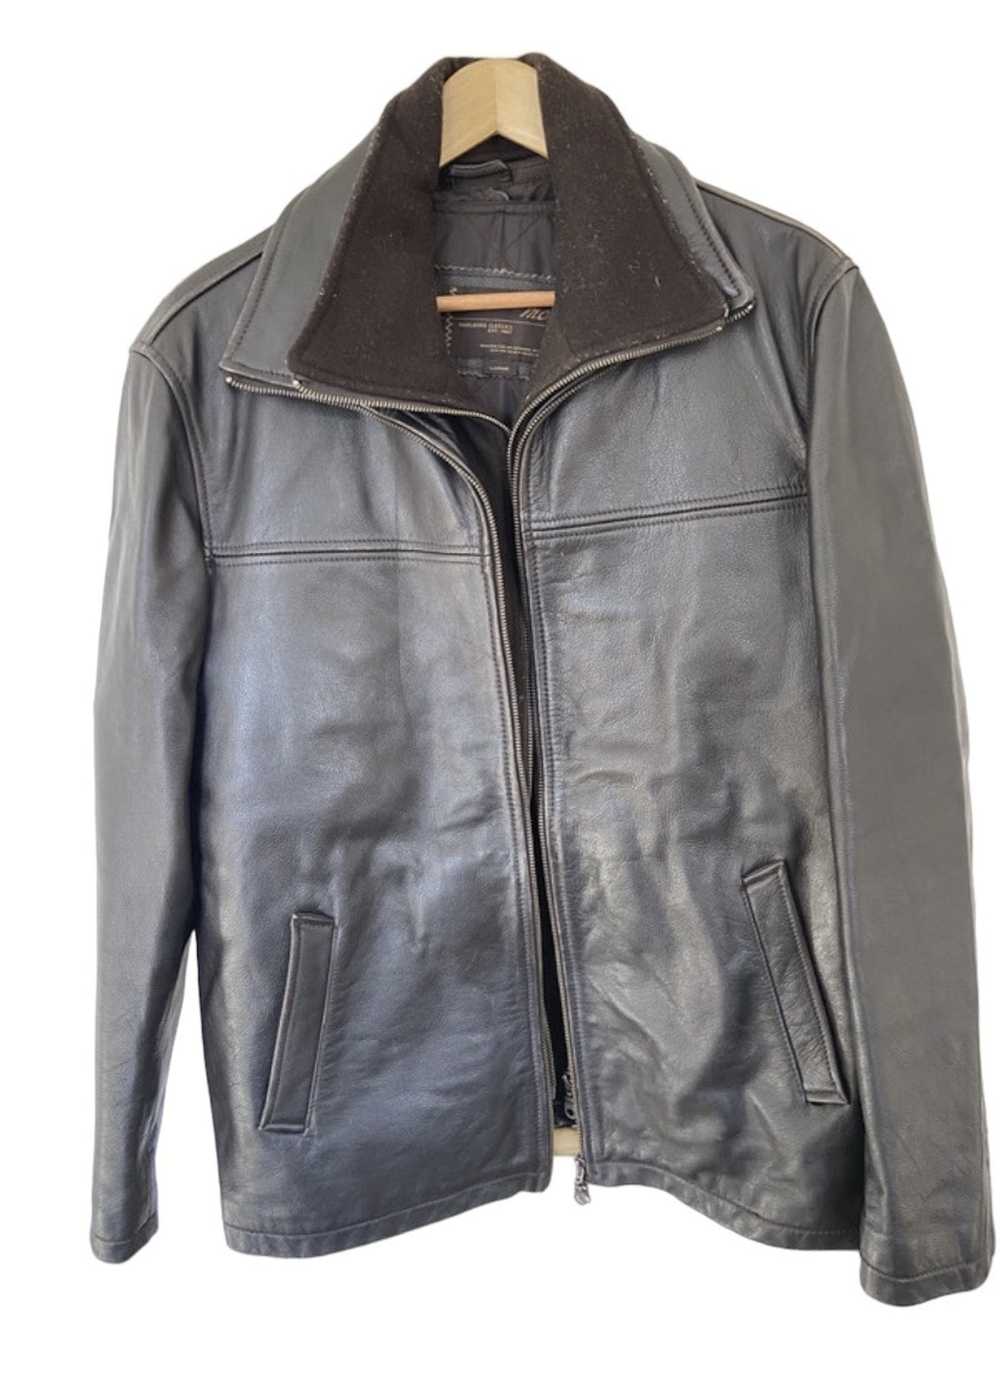 Marlboro Classics Marlboro classic leather jacket - image 1